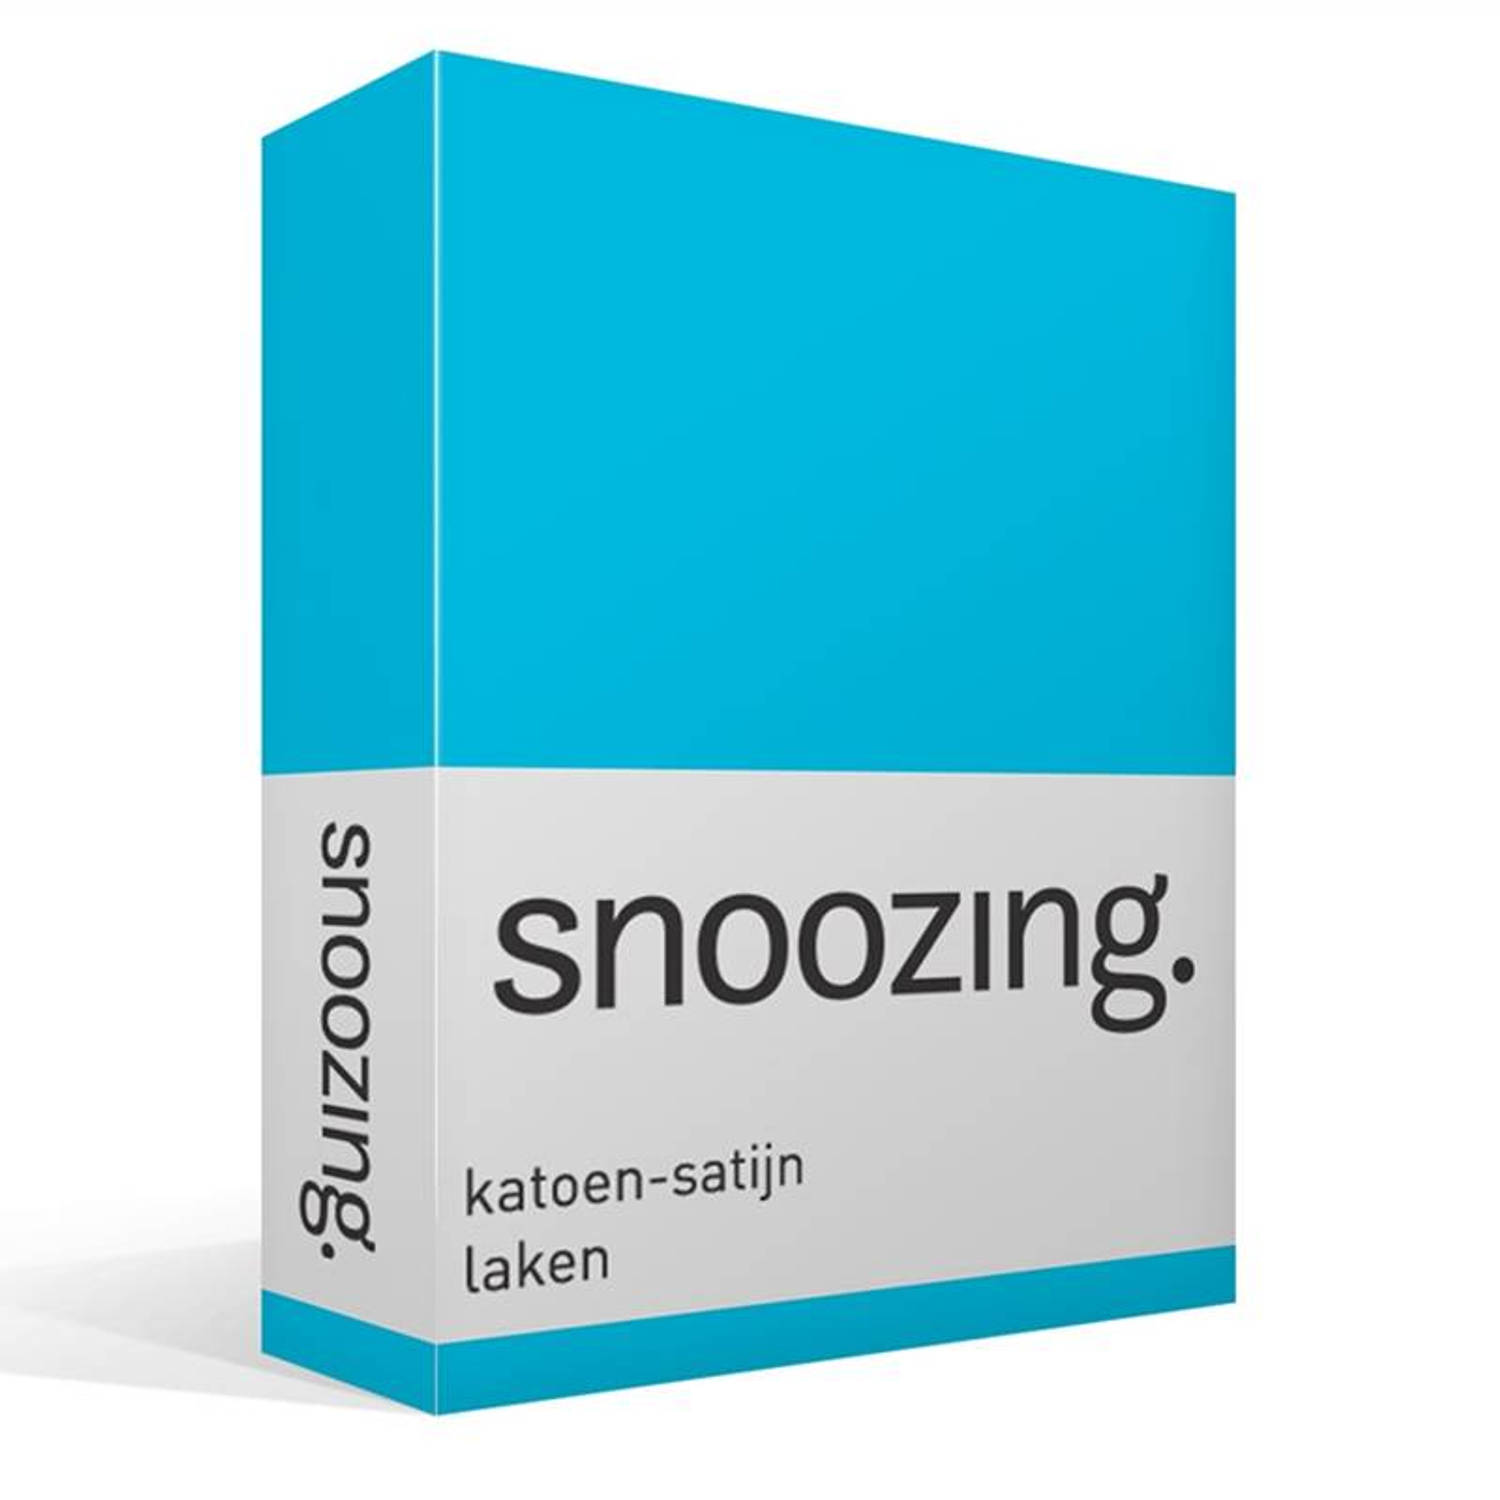 Snoozing katoen-satijn laken - 100% katoen-satijn - 2-persoons (200x260 cm) - Blauw